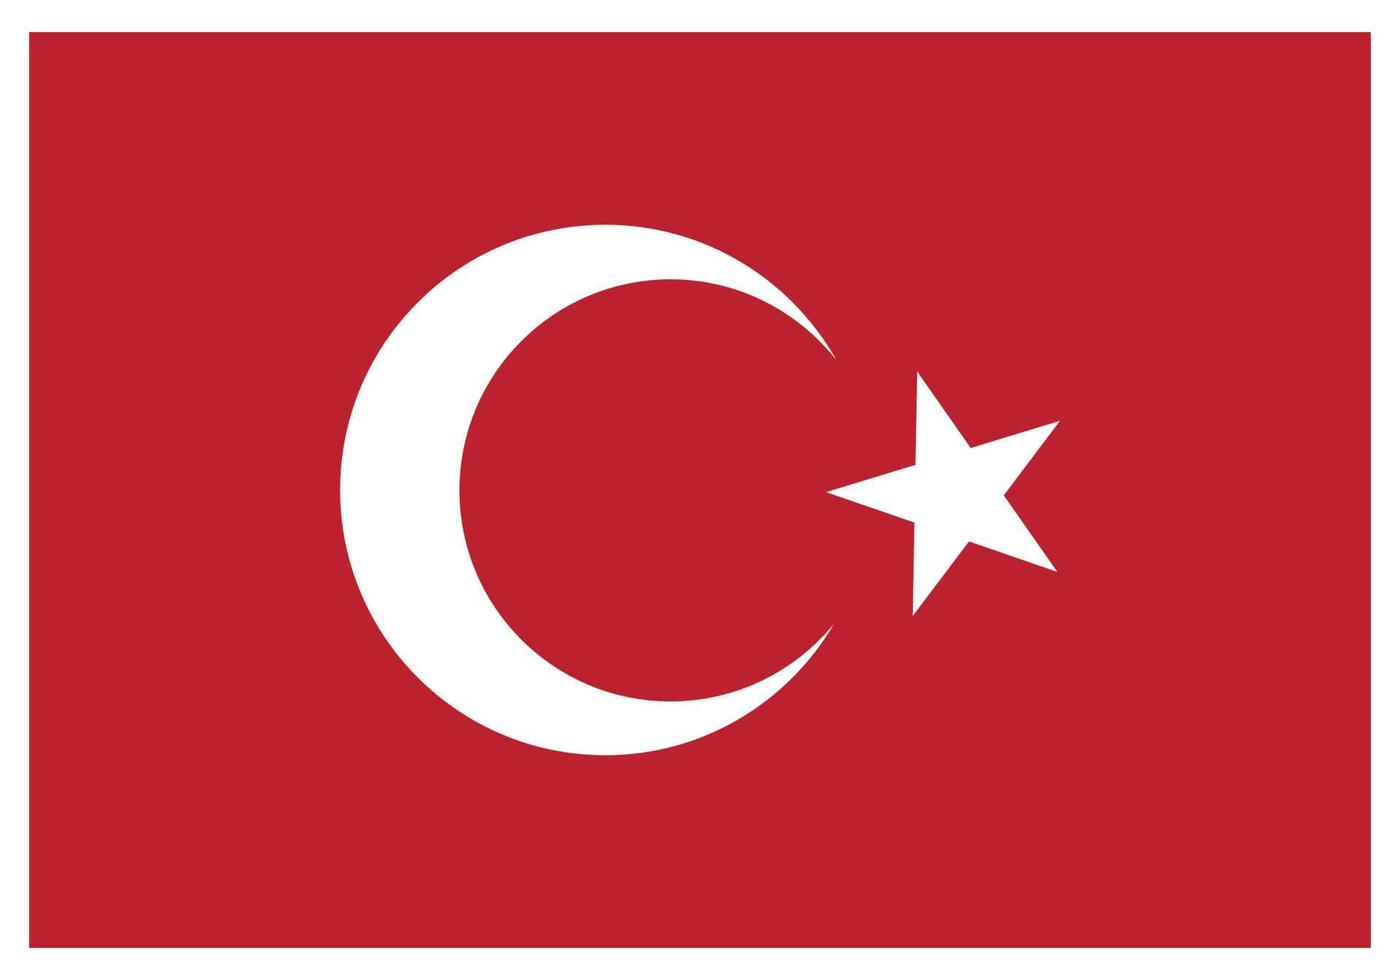 Nationalflagge der Türkei - flaches Farbsymbol. vektor